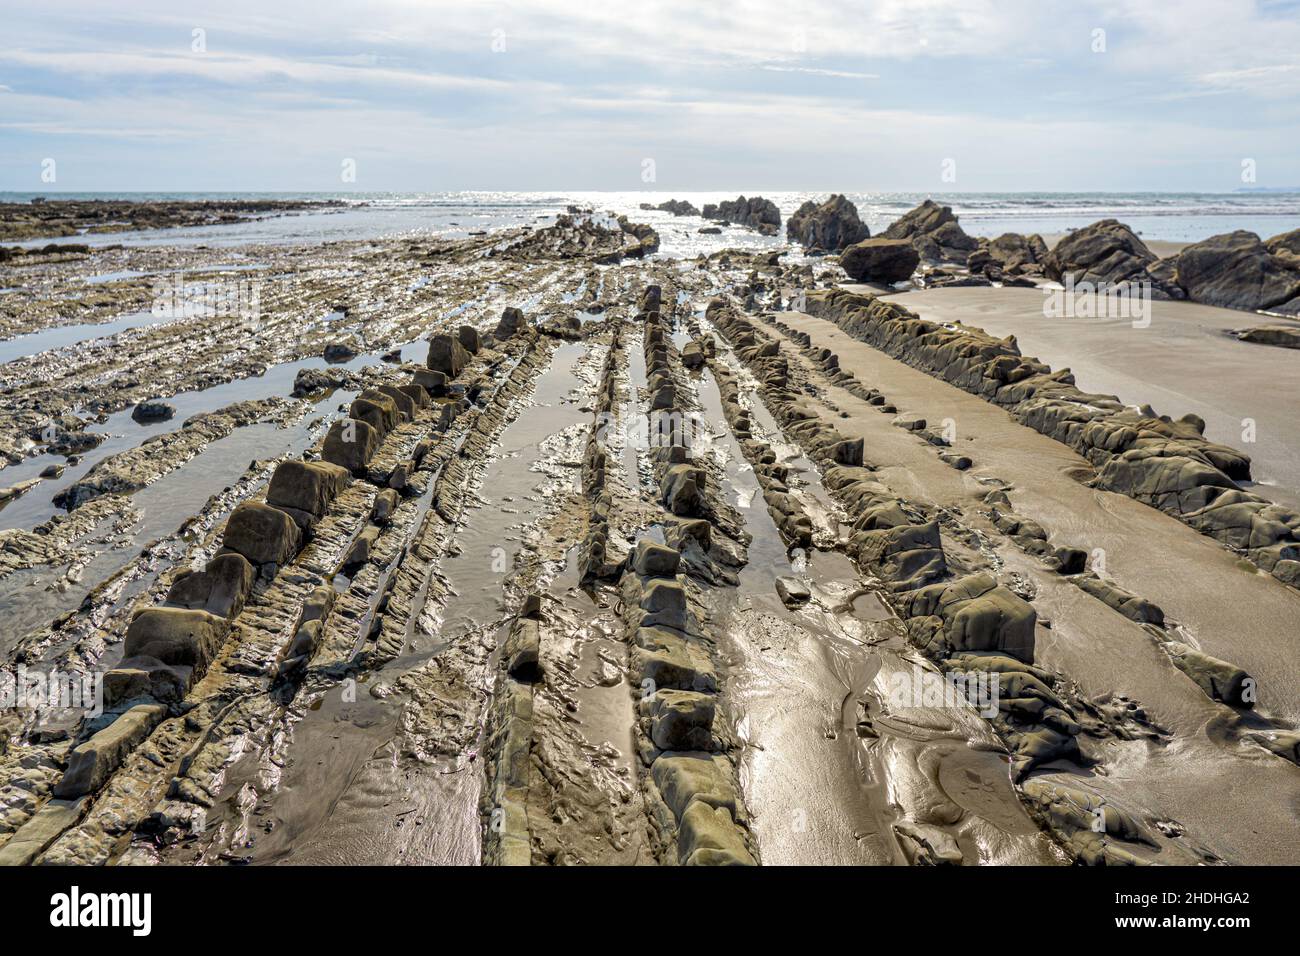 Crêtes en pierre d'une plage rocheuse de la province de Puntarenas au Costa Rica. Banque D'Images